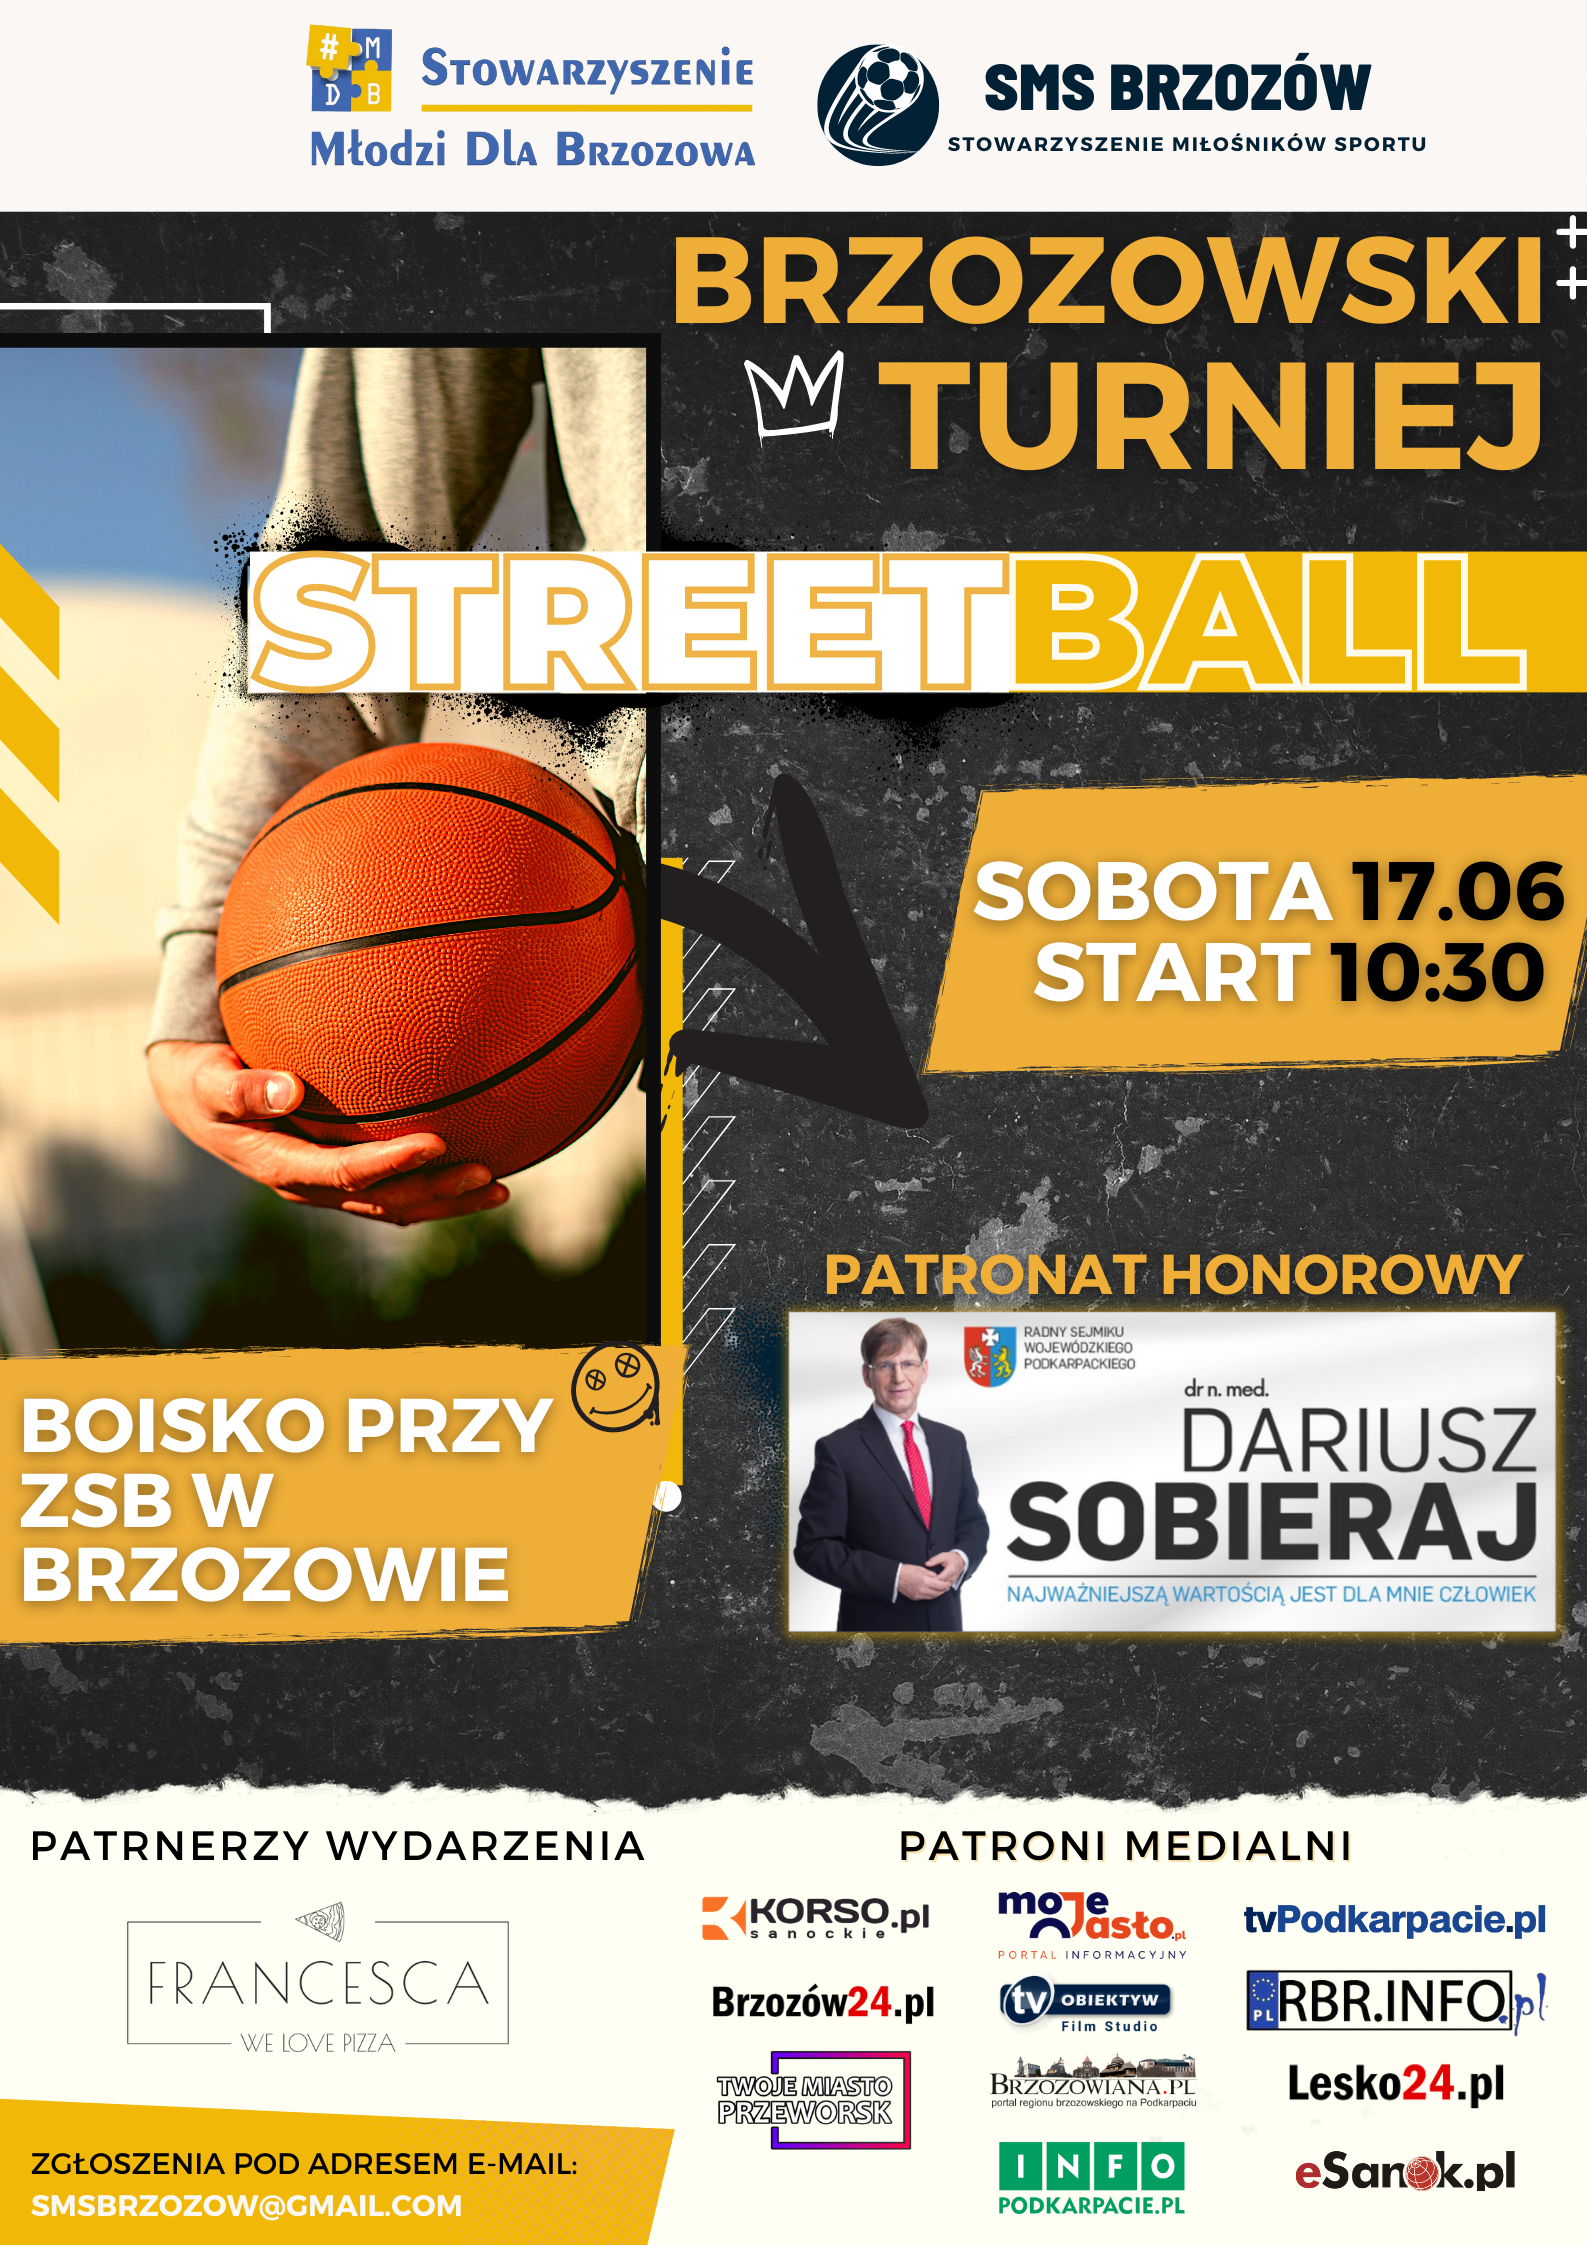 Portal „Twoje Miasto Przeworsk” patronem medialnym Turnieju STREETBALL w Brzozowie